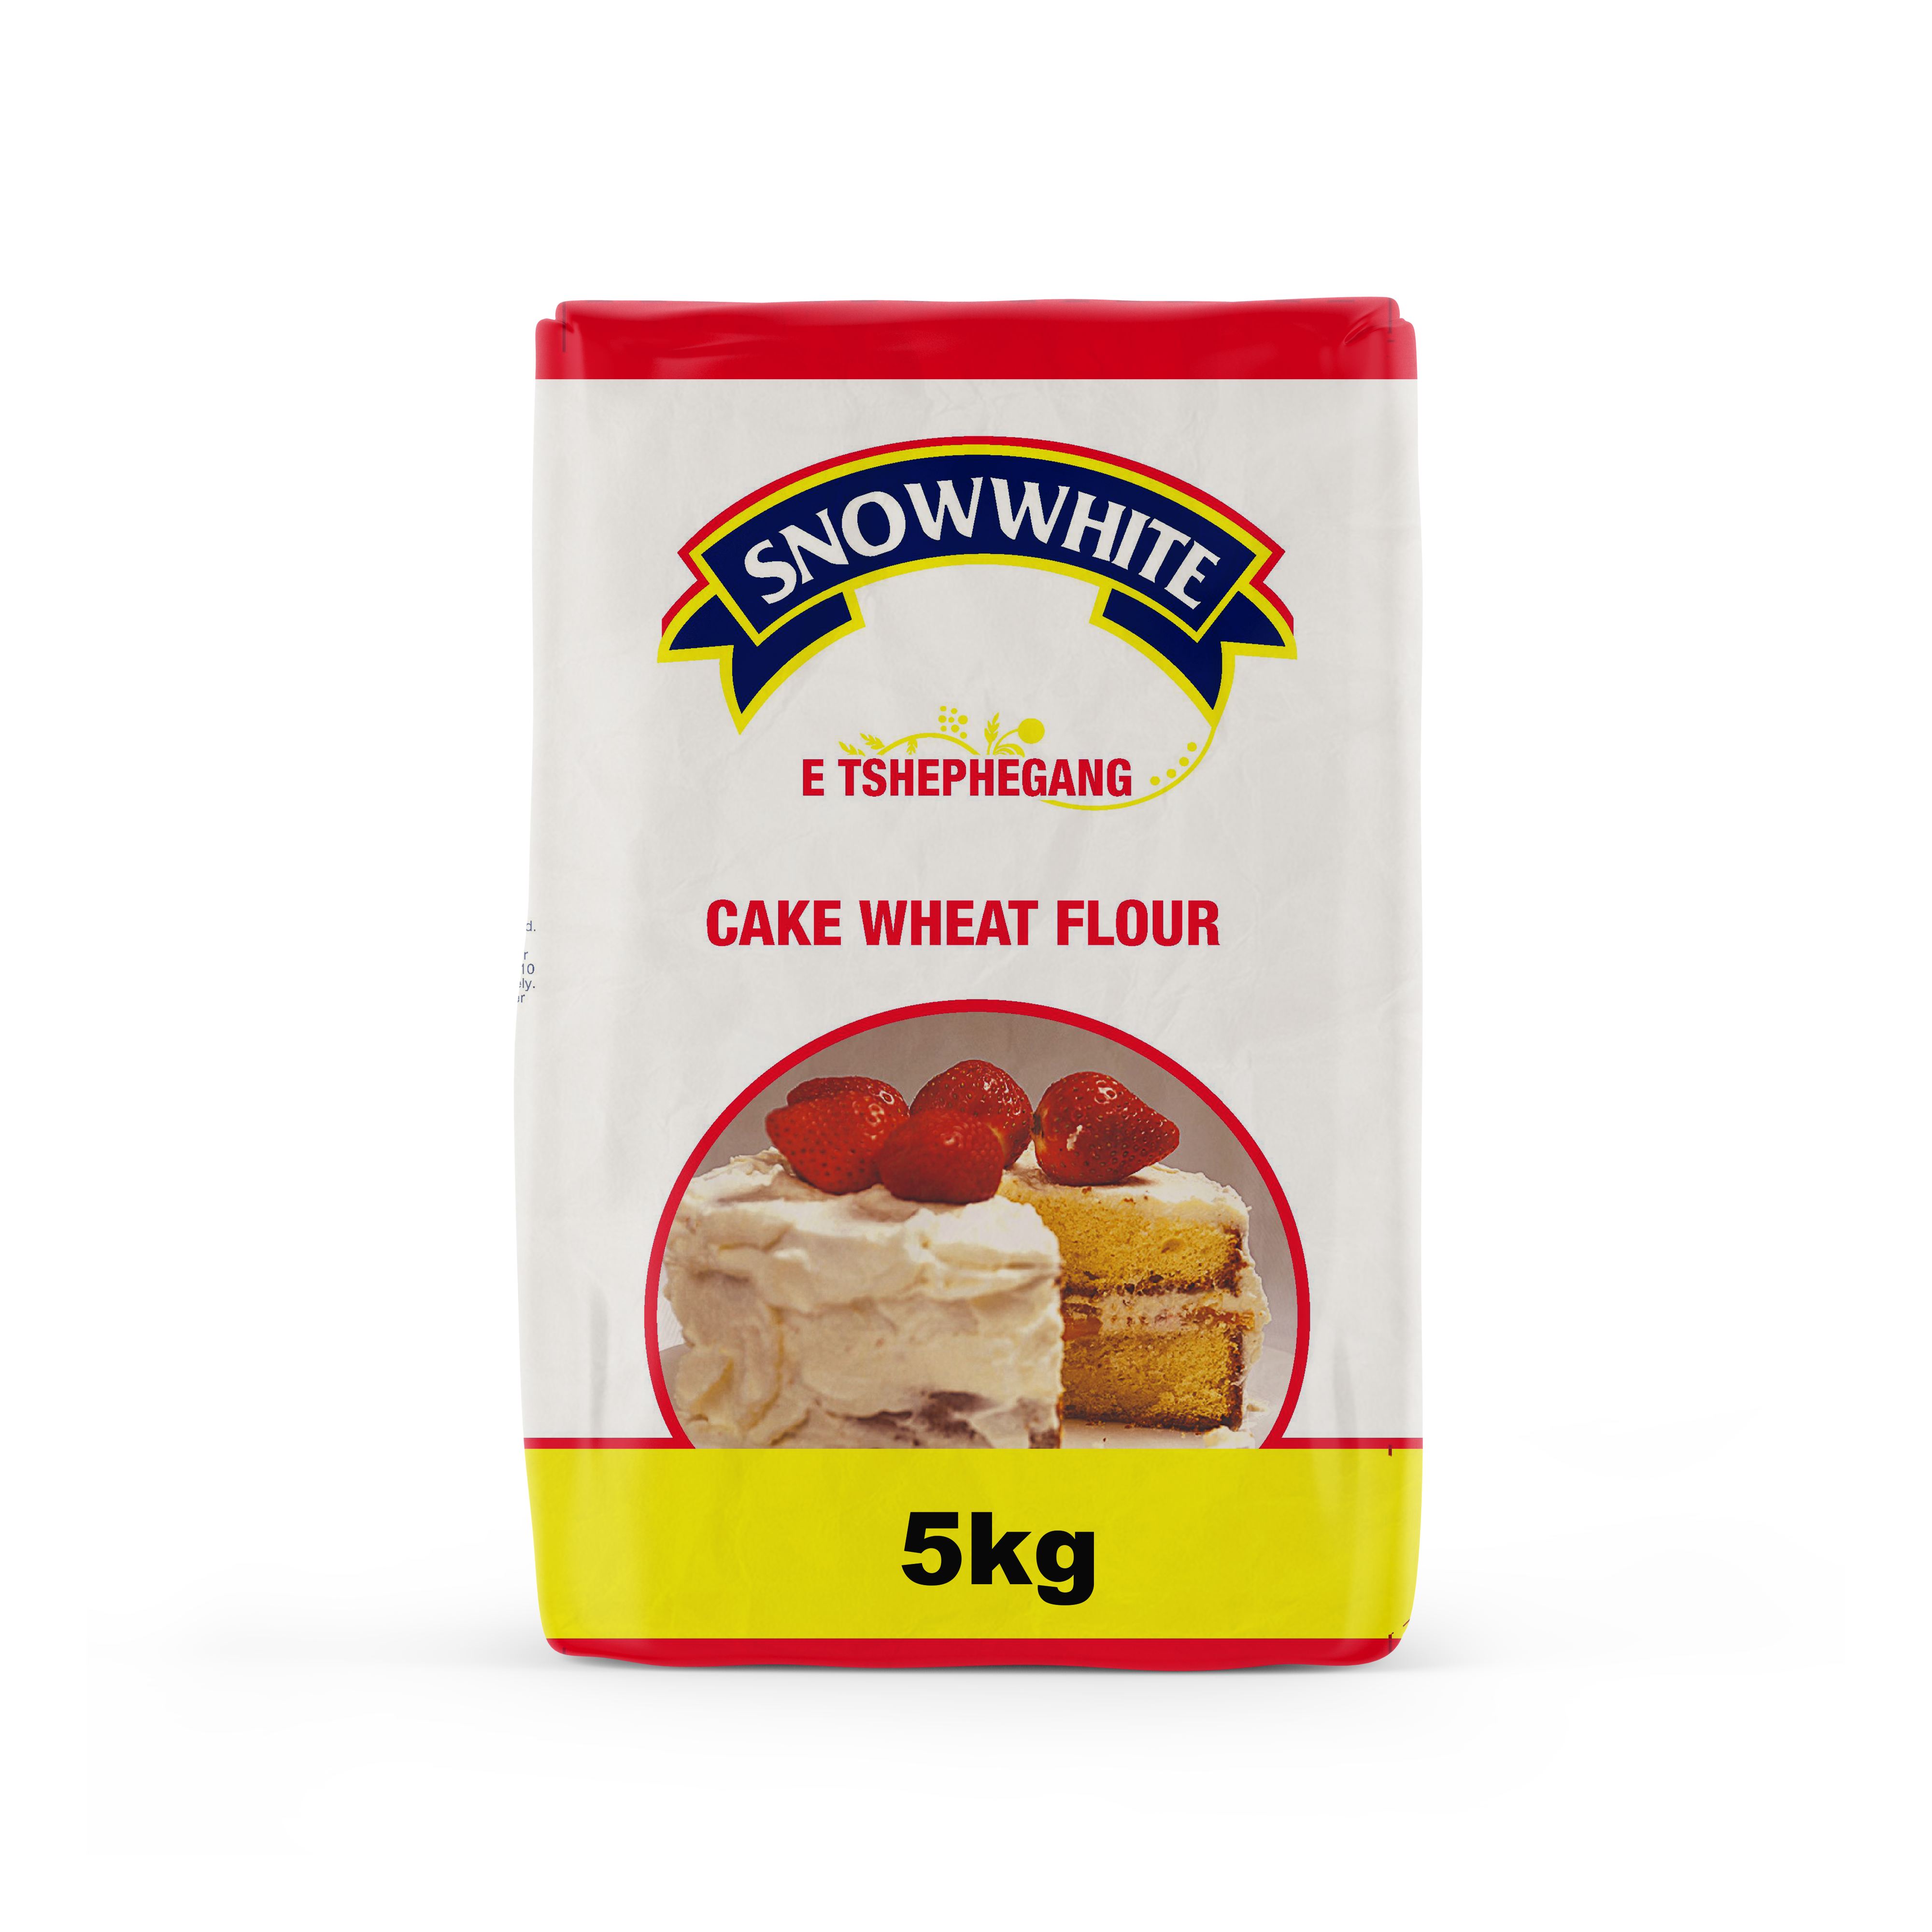 Snowwhite Cake Wheat Flour 5 Kg